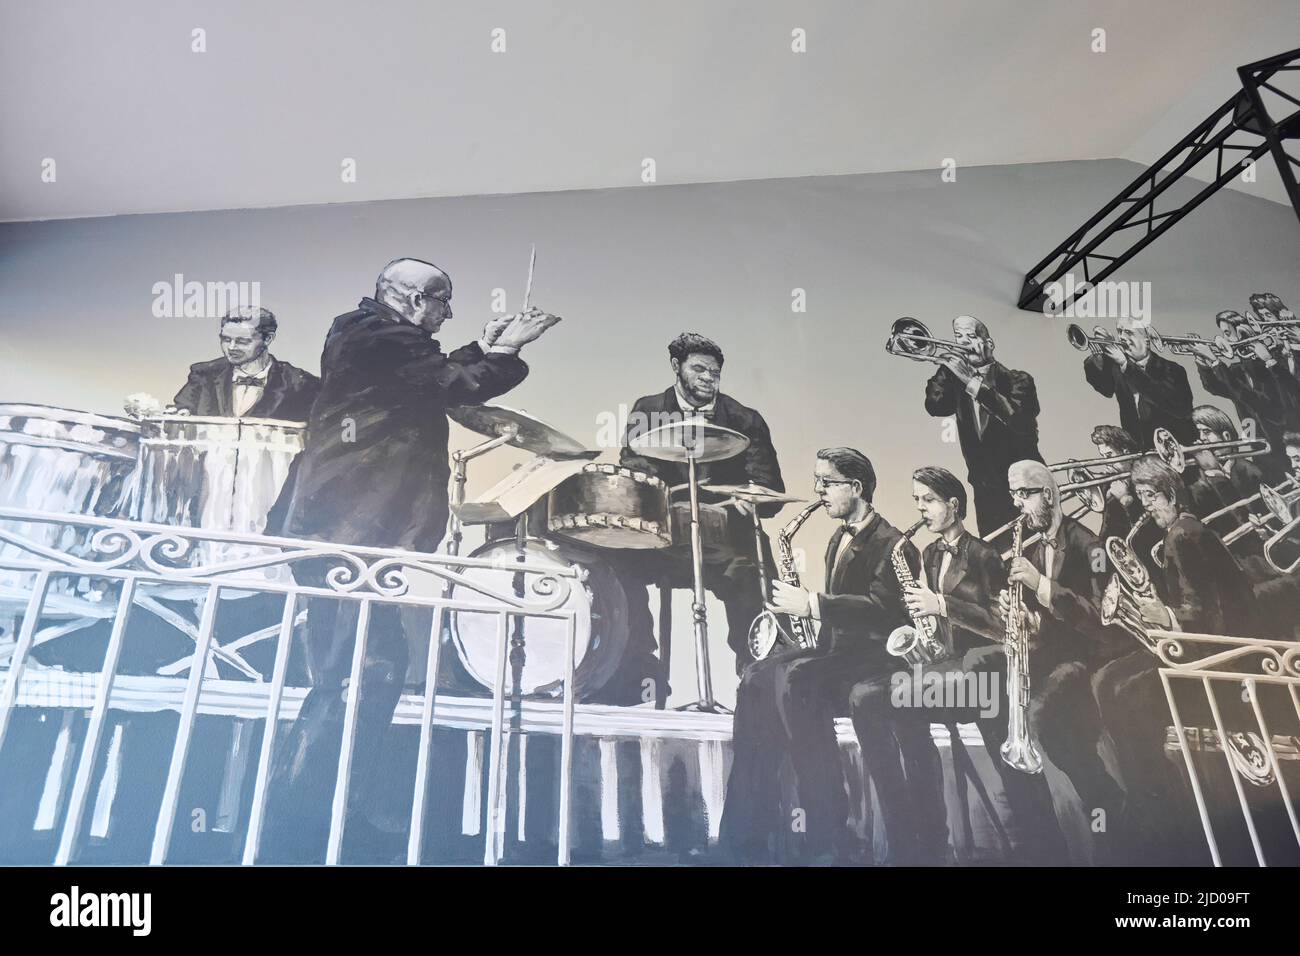 Illustration d'un groupe de jazz sur le mur dans un café Banque D'Images